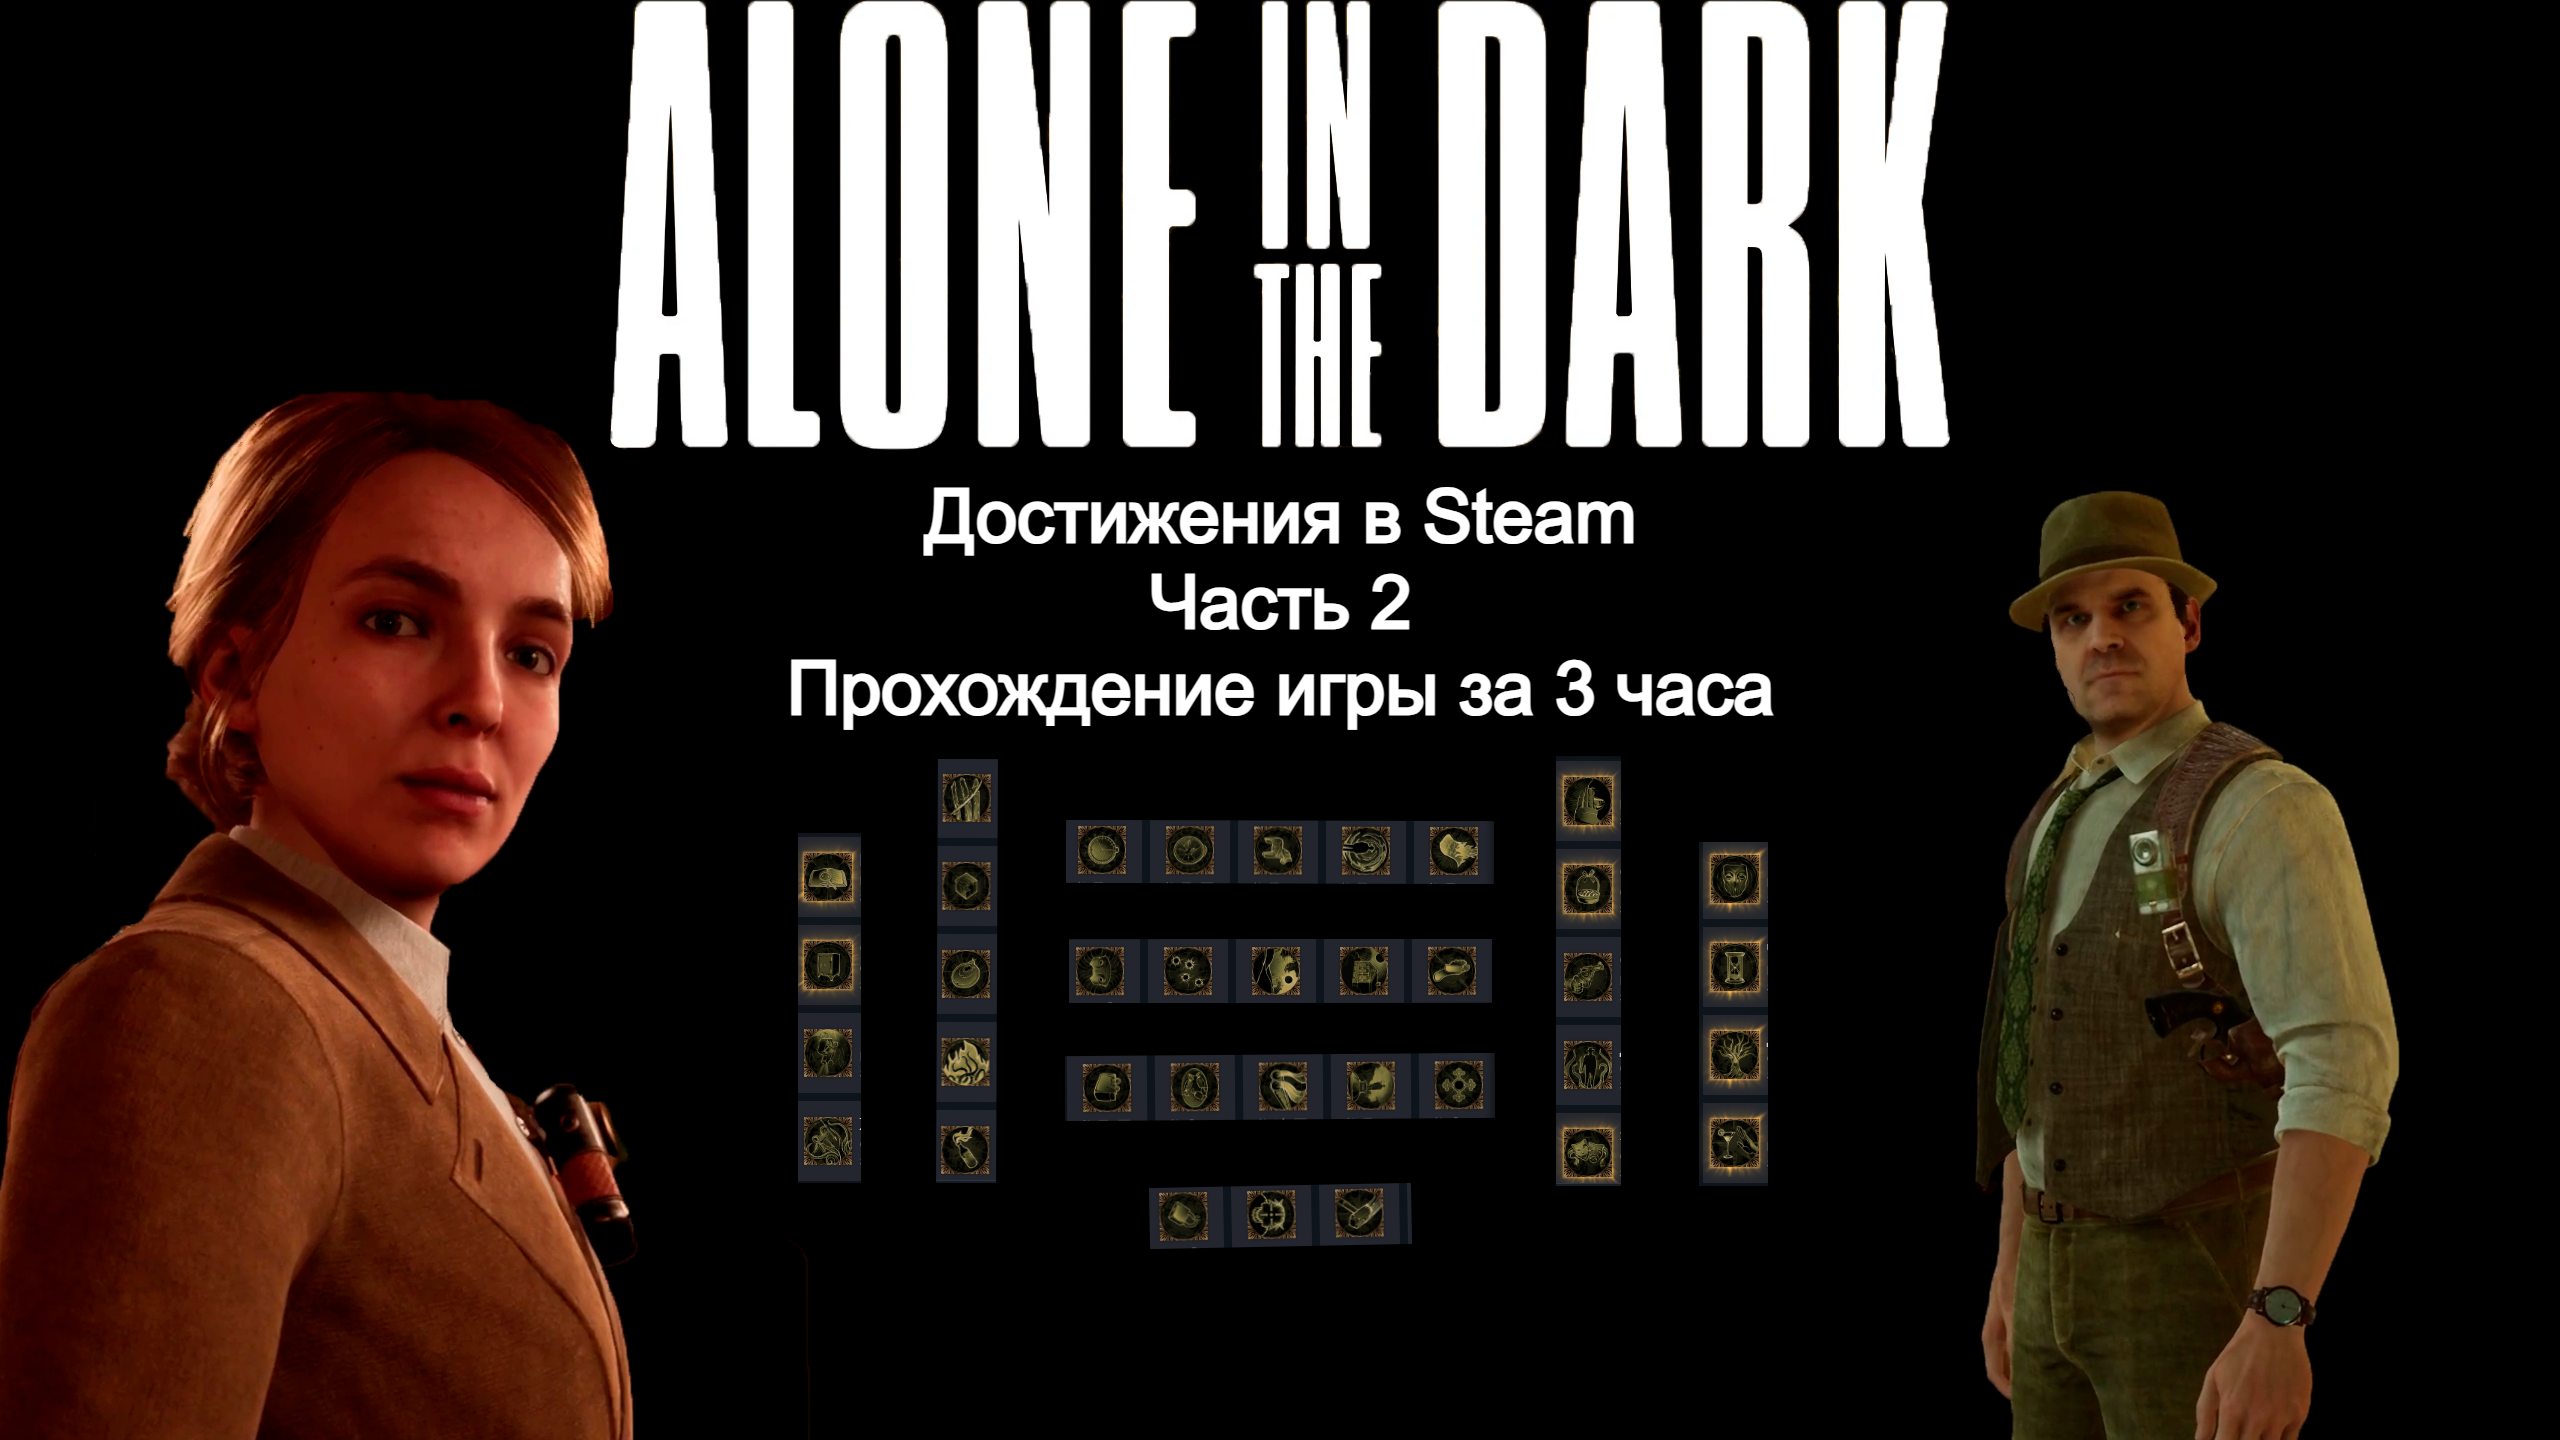 Все достижения в Steam, часть 2, Прохождение за 3 часа ★ Alone in the dark